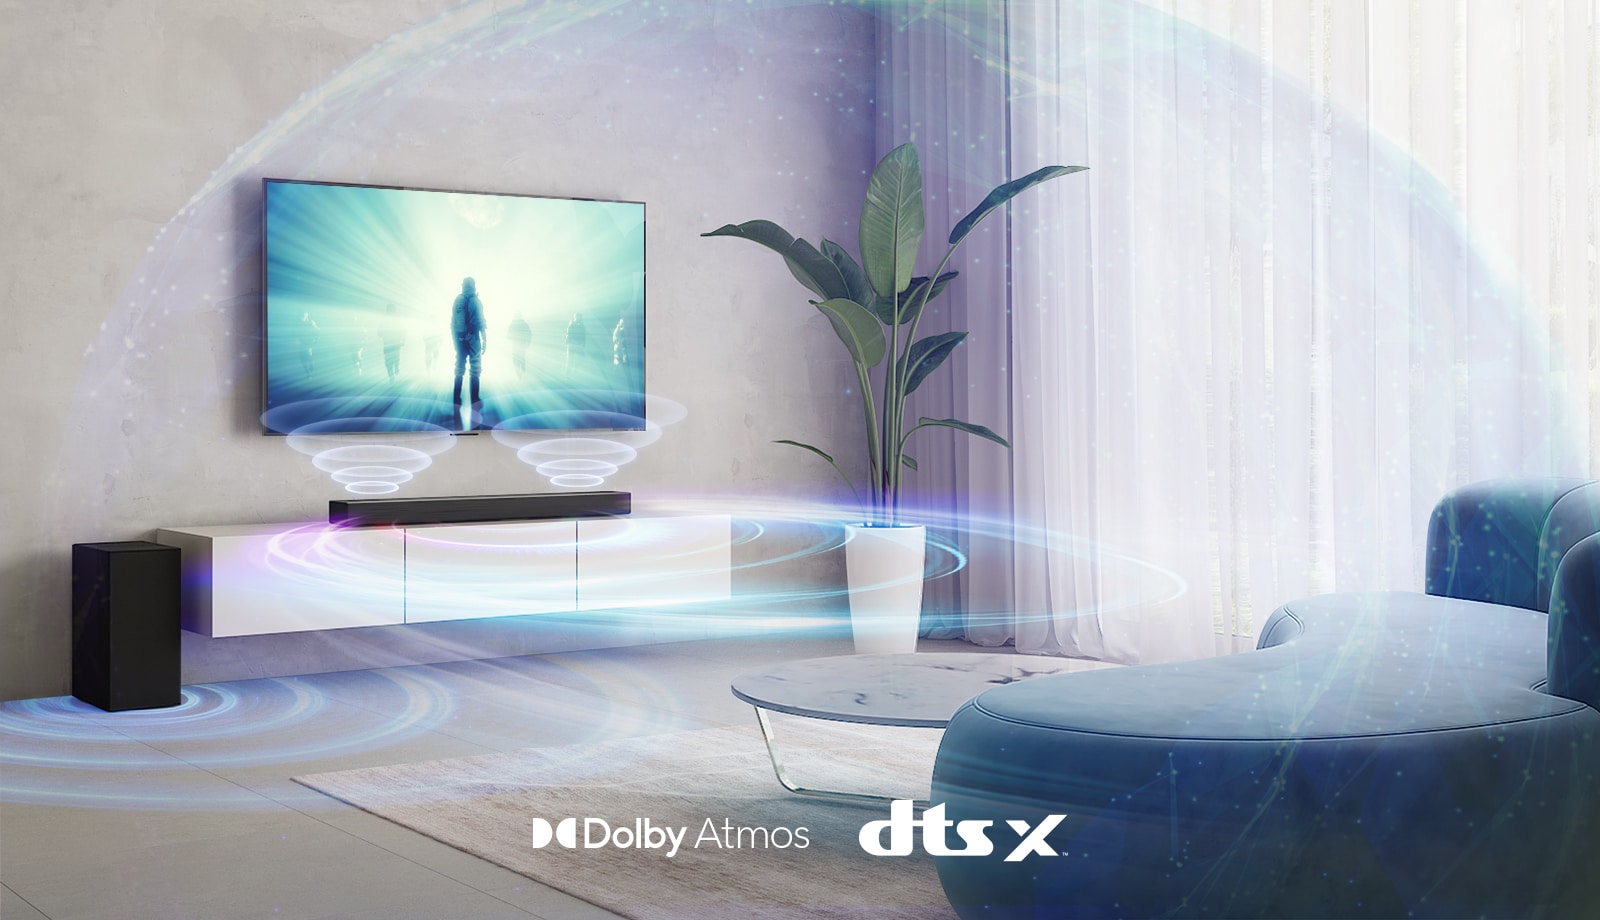 Στο σαλόνι, υπάρχει μια τηλεόραση LG στον τοίχο. Στην οθόνη της τηλεόρασης παίζει μια ταινία. Το LG Sound bar βρίσκεται ακριβώς κάτω από την τηλεόραση σε ένα μπεζ ράφι με ένα πίσω ηχείο τοποθετημένο στα αριστερά. Στο κάτω ενδιάμεσο μέρος της εικόνας φαίνονται τα λογότυπα Dolby Atmos και DTS:X.